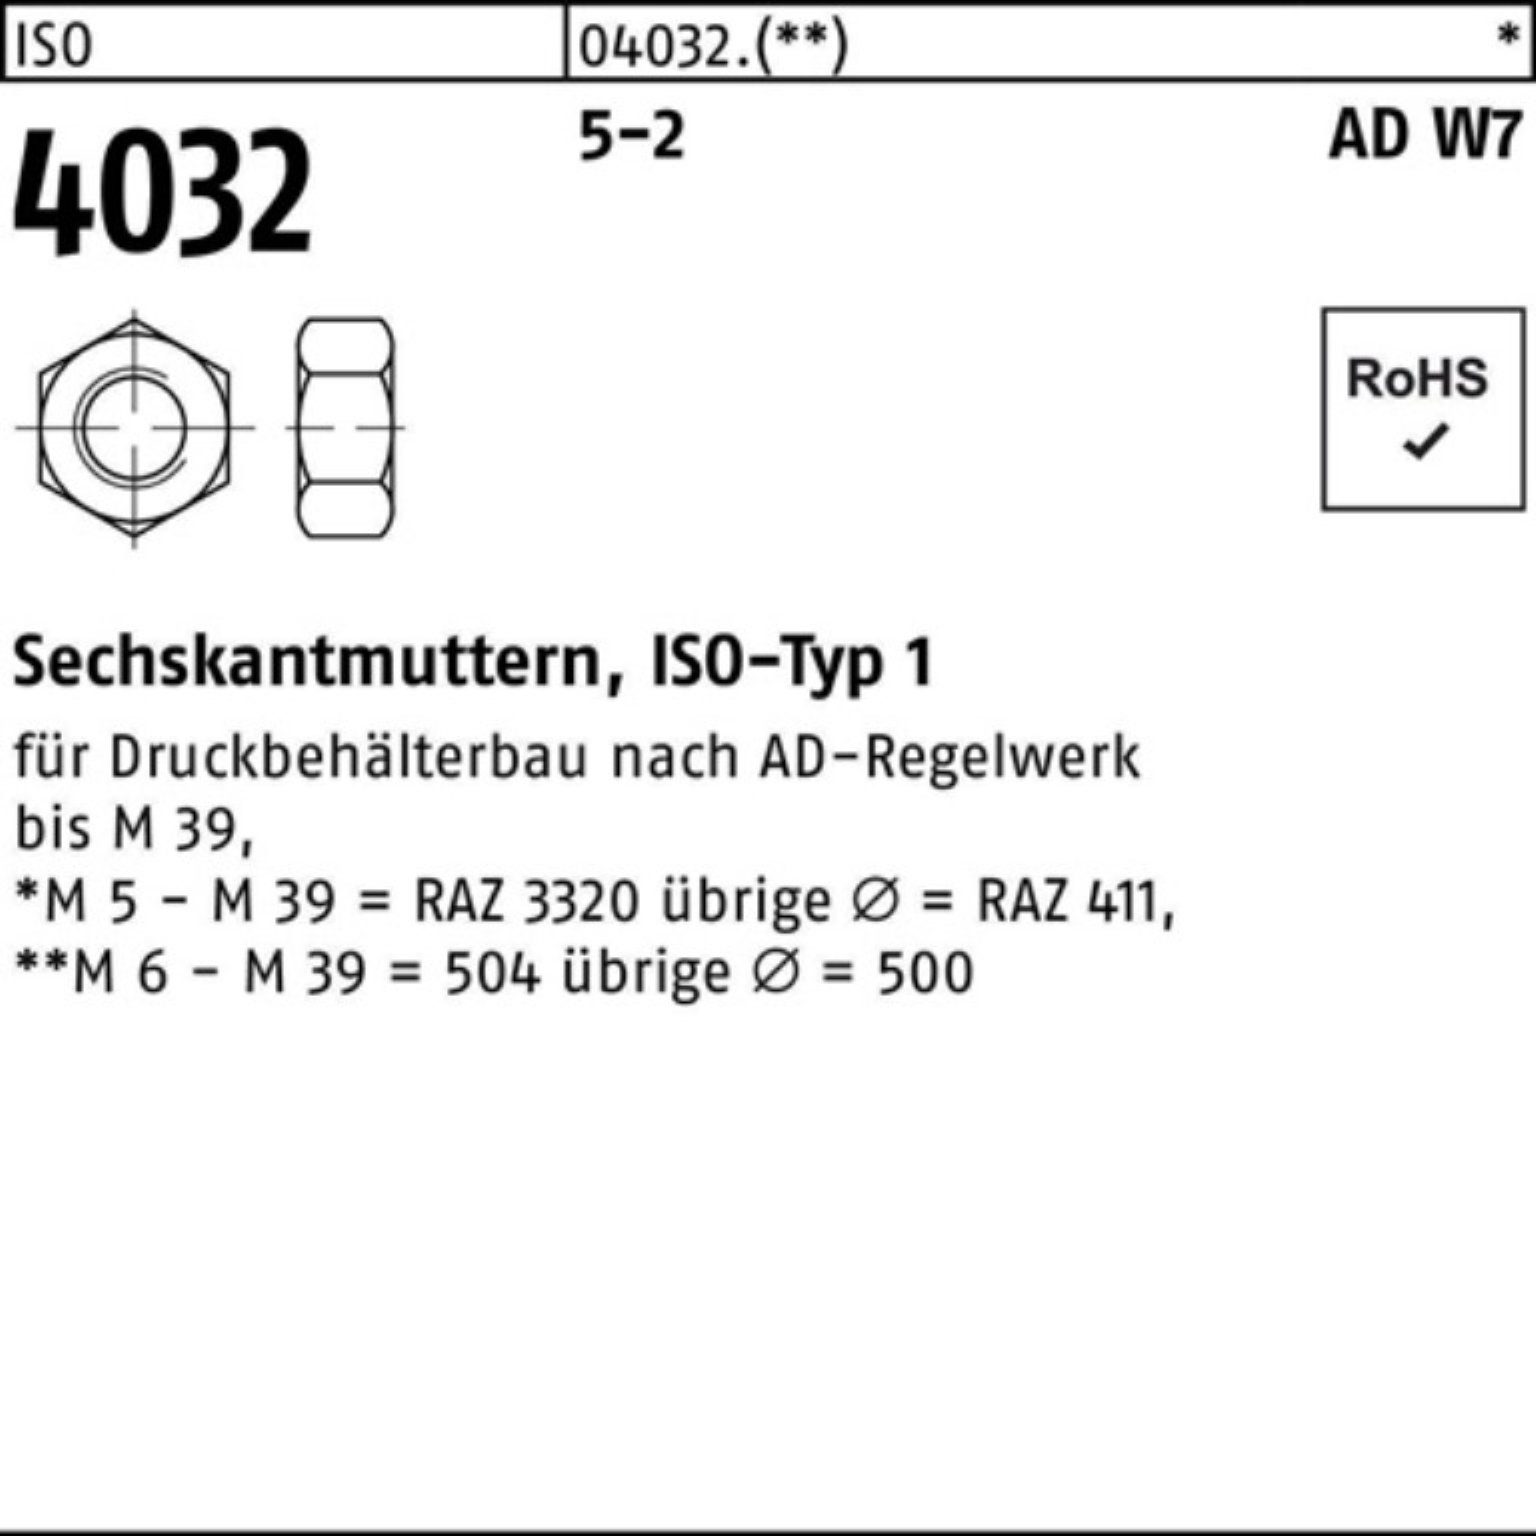 4032 M33 5-2 Sechskantmutter ISO 100er Muttern Pack ISO AD W7 10 Stück Bufab 5 4032